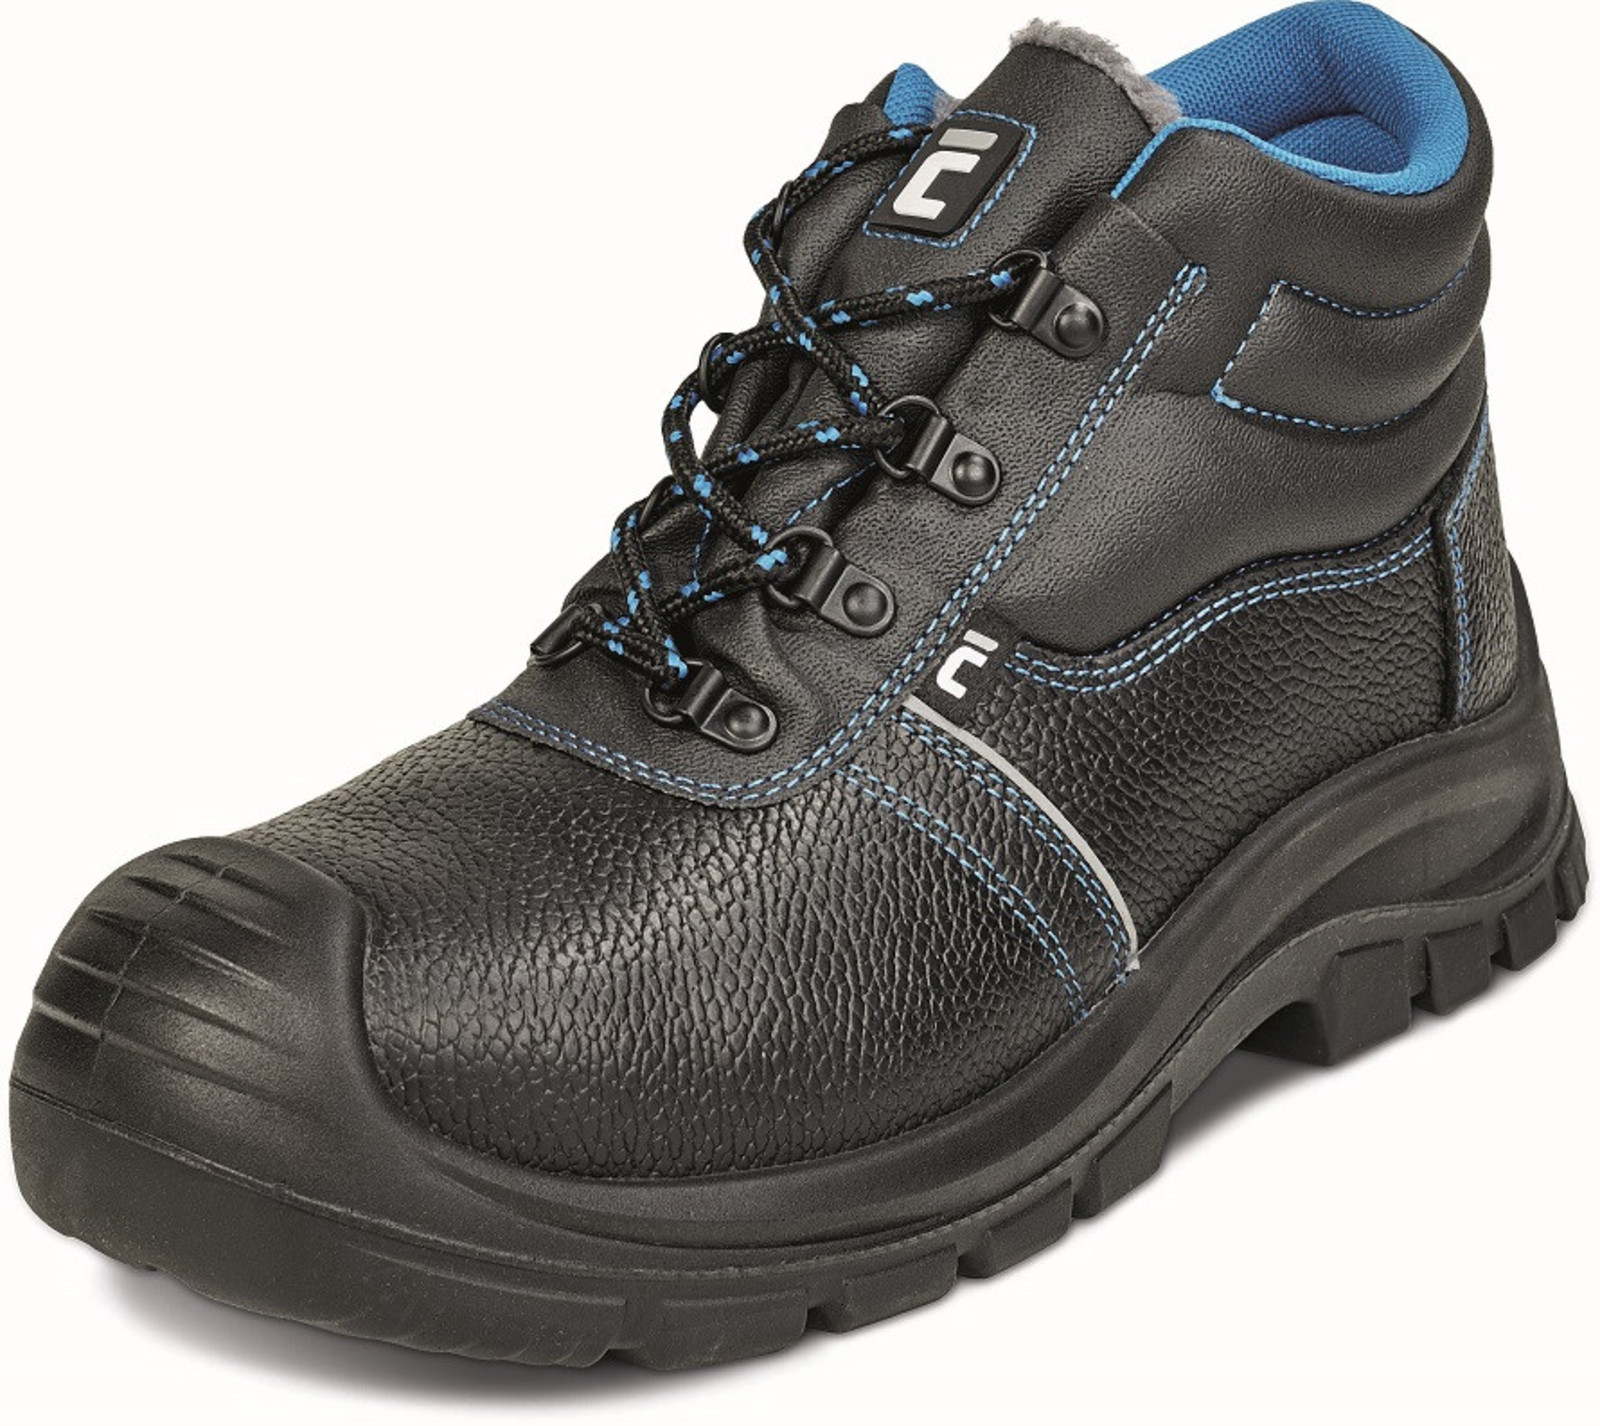 Zimná bezpečnostná obuv Raven XT S1 - veľkosť: 49, farba: čierna